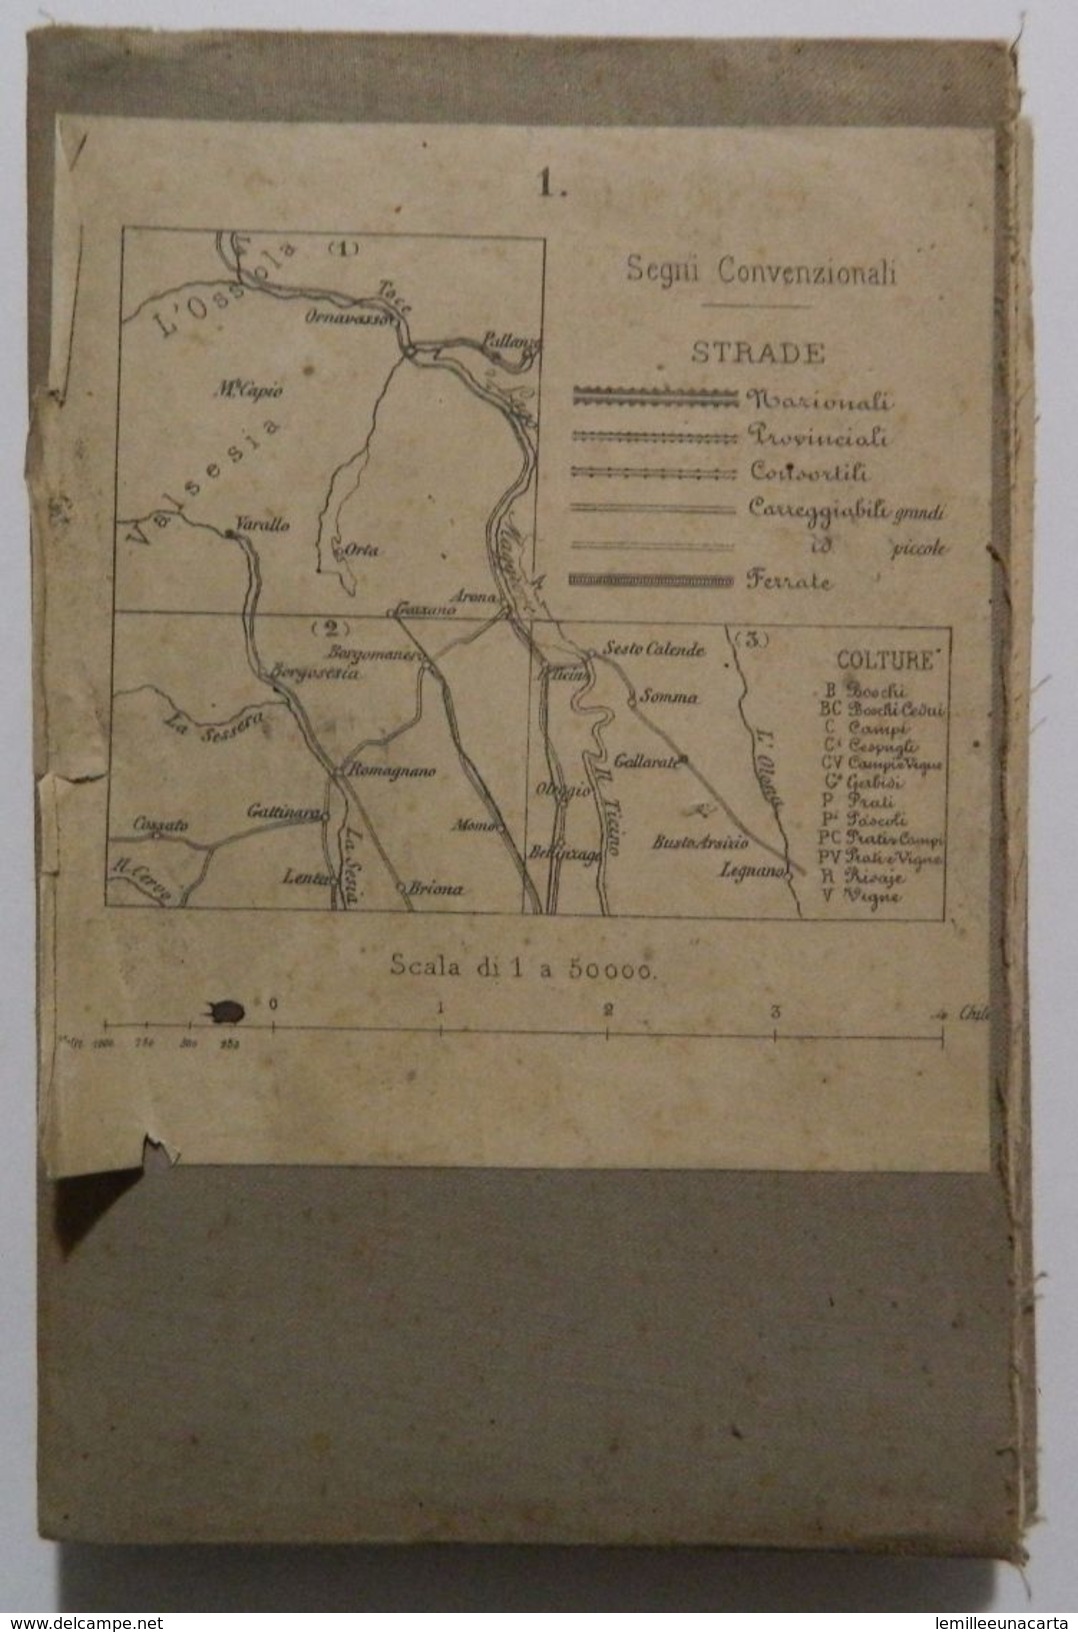 Mappa Su Tela _ PIEMONTE SETTENTRIONALE _ LAGO MAGGIORE E D'ORTA, VARALLO, OMEGNA, ARONA _ Scala 1 : 50.000 _datata 1855 - Cartes Topographiques